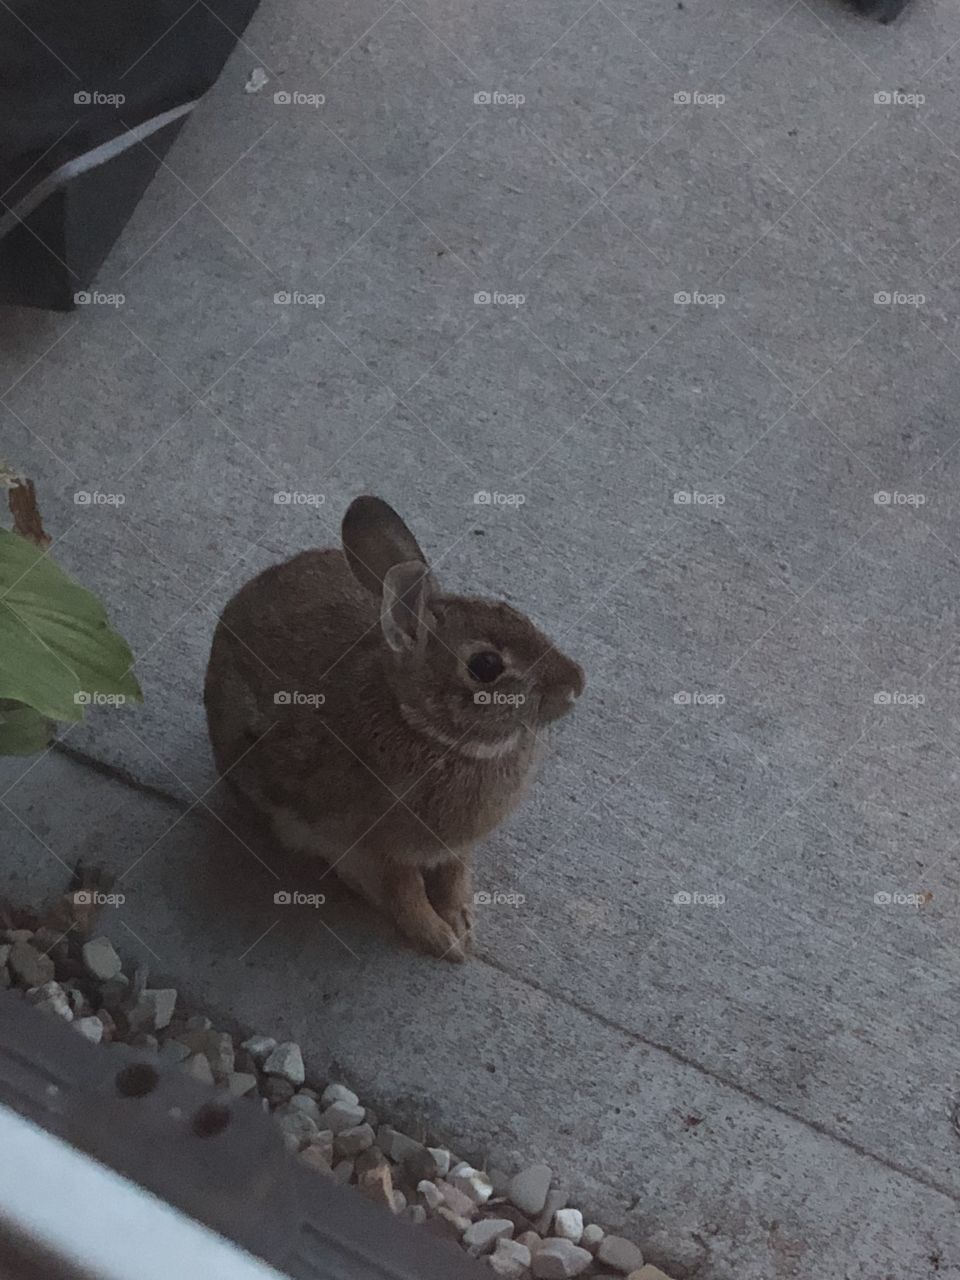 A rabbit near the back door in my backyard taken on 9/26/18